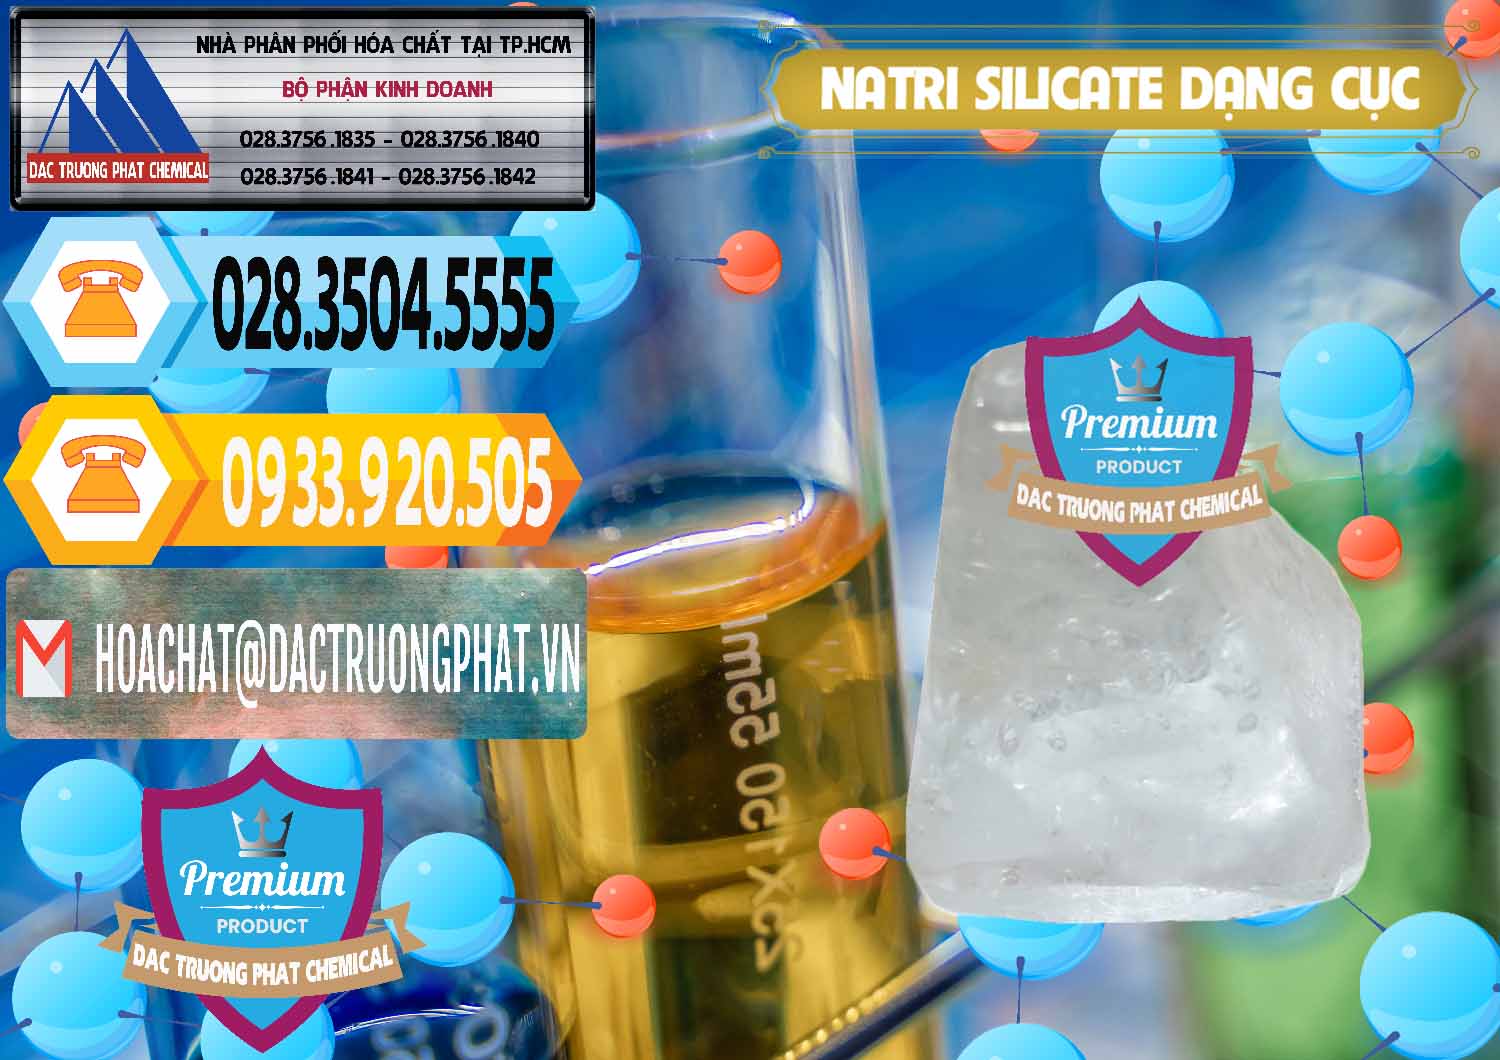 Nơi chuyên bán - cung ứng Natri Silicate - Na2SiO3 - Keo Silicate Dạng Cục Ấn Độ India - 0382 - Nơi chuyên kinh doanh và cung cấp hóa chất tại TP.HCM - hoachattayrua.net